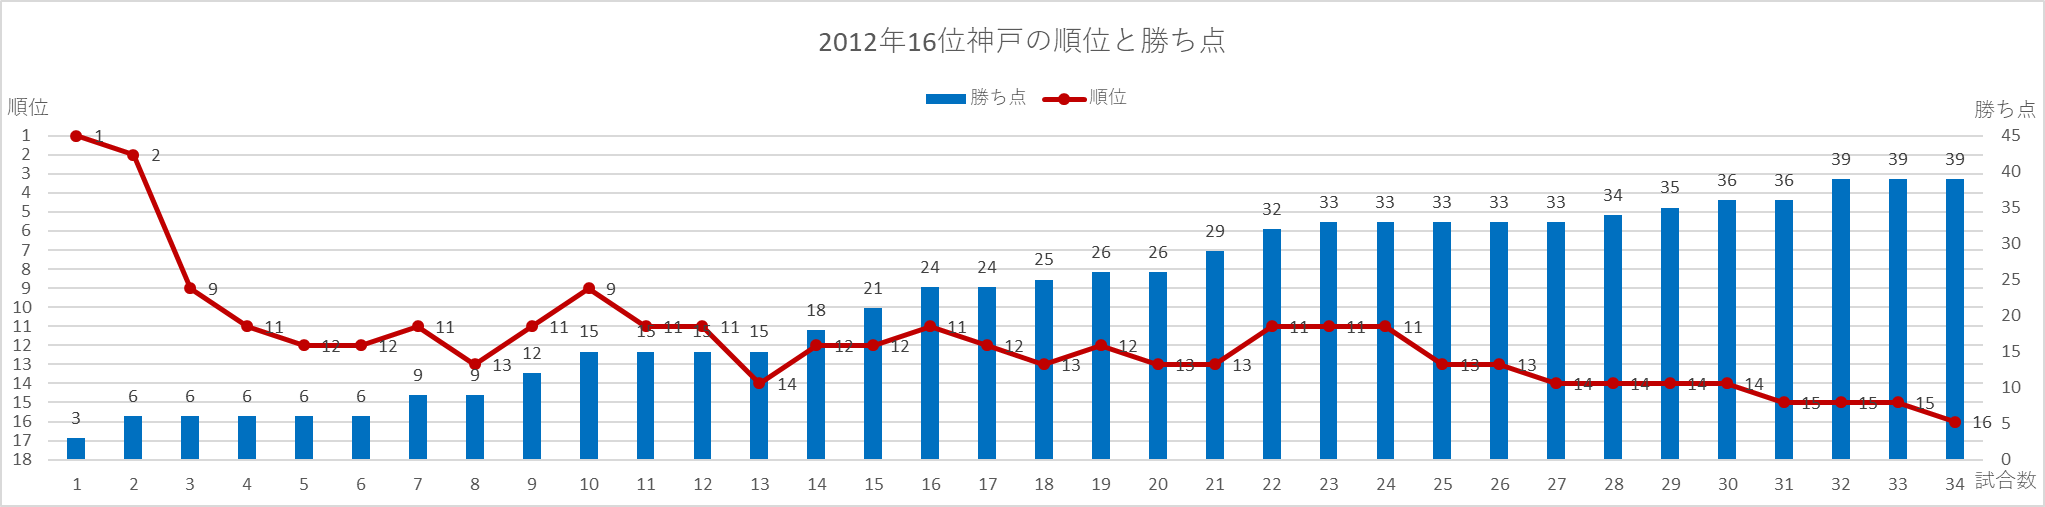 2012年神戸の順位と勝ち点の推移